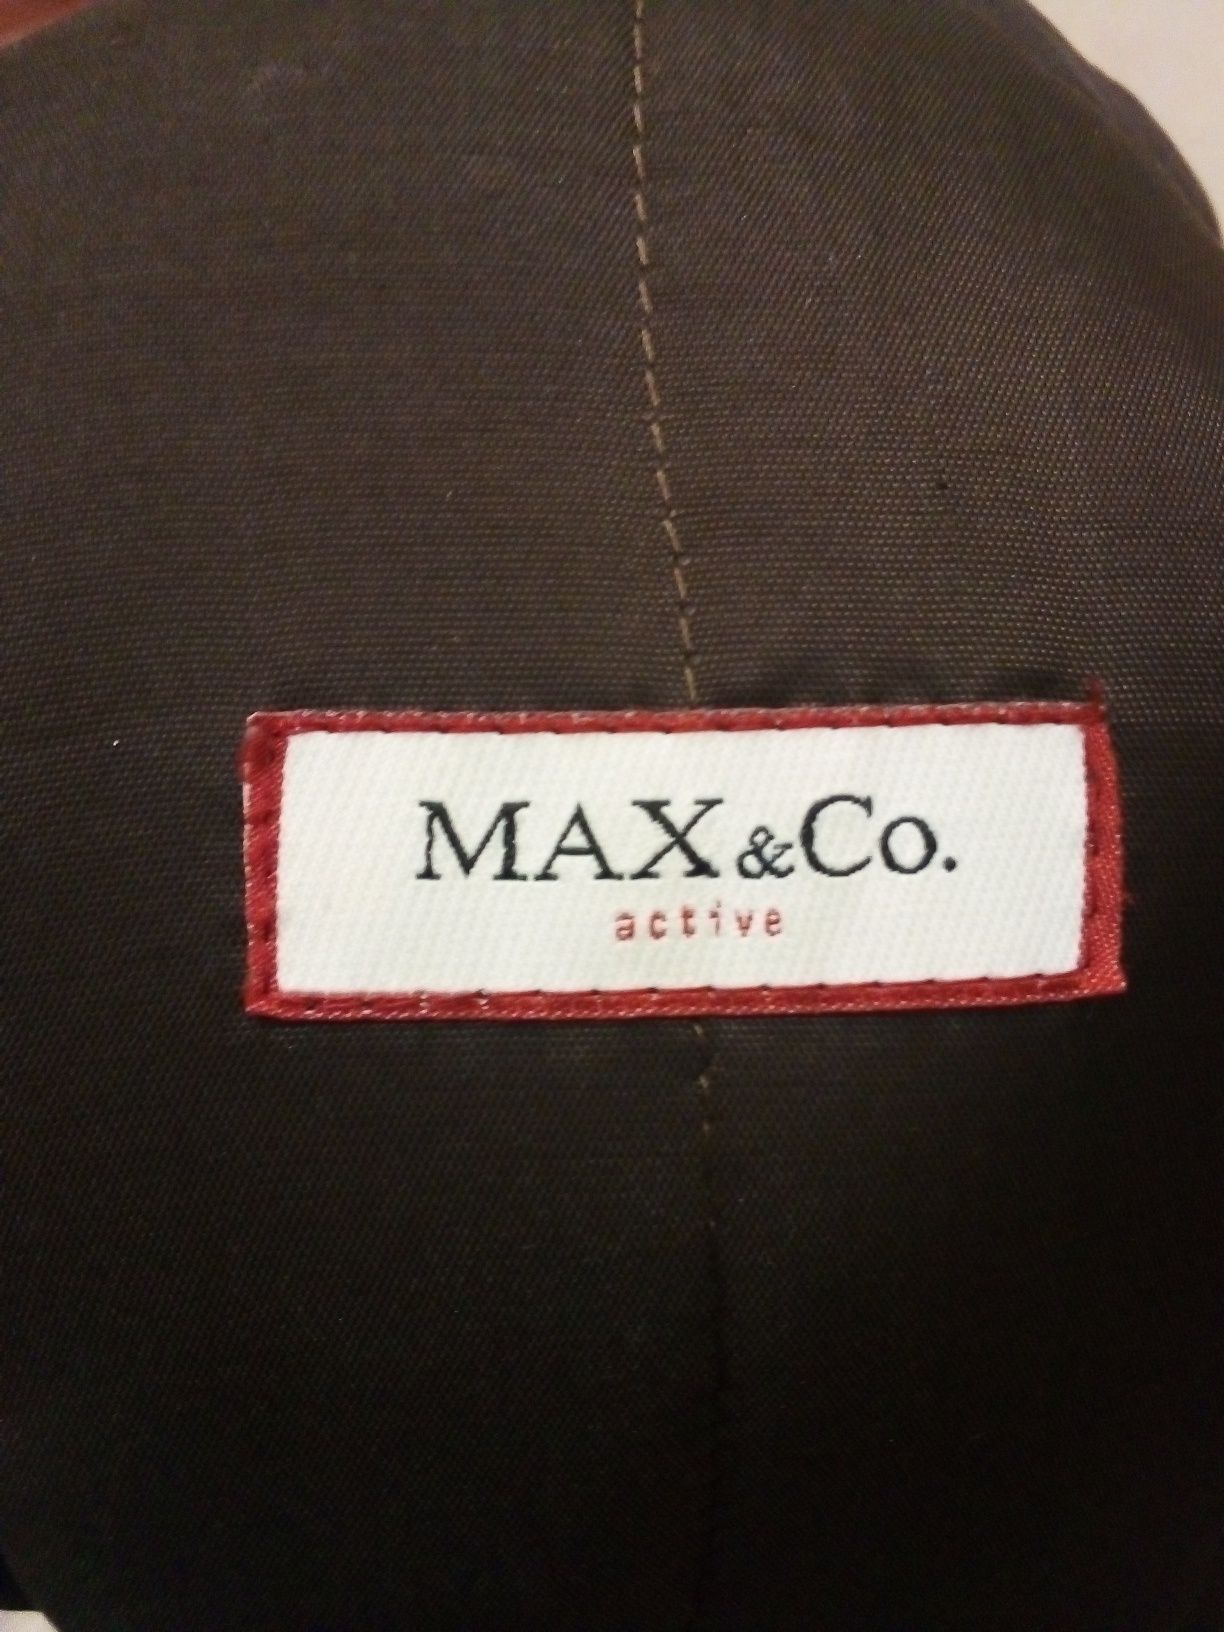 Фирменная весенняя женская куртка MAX&Co. Италия  р. 44.